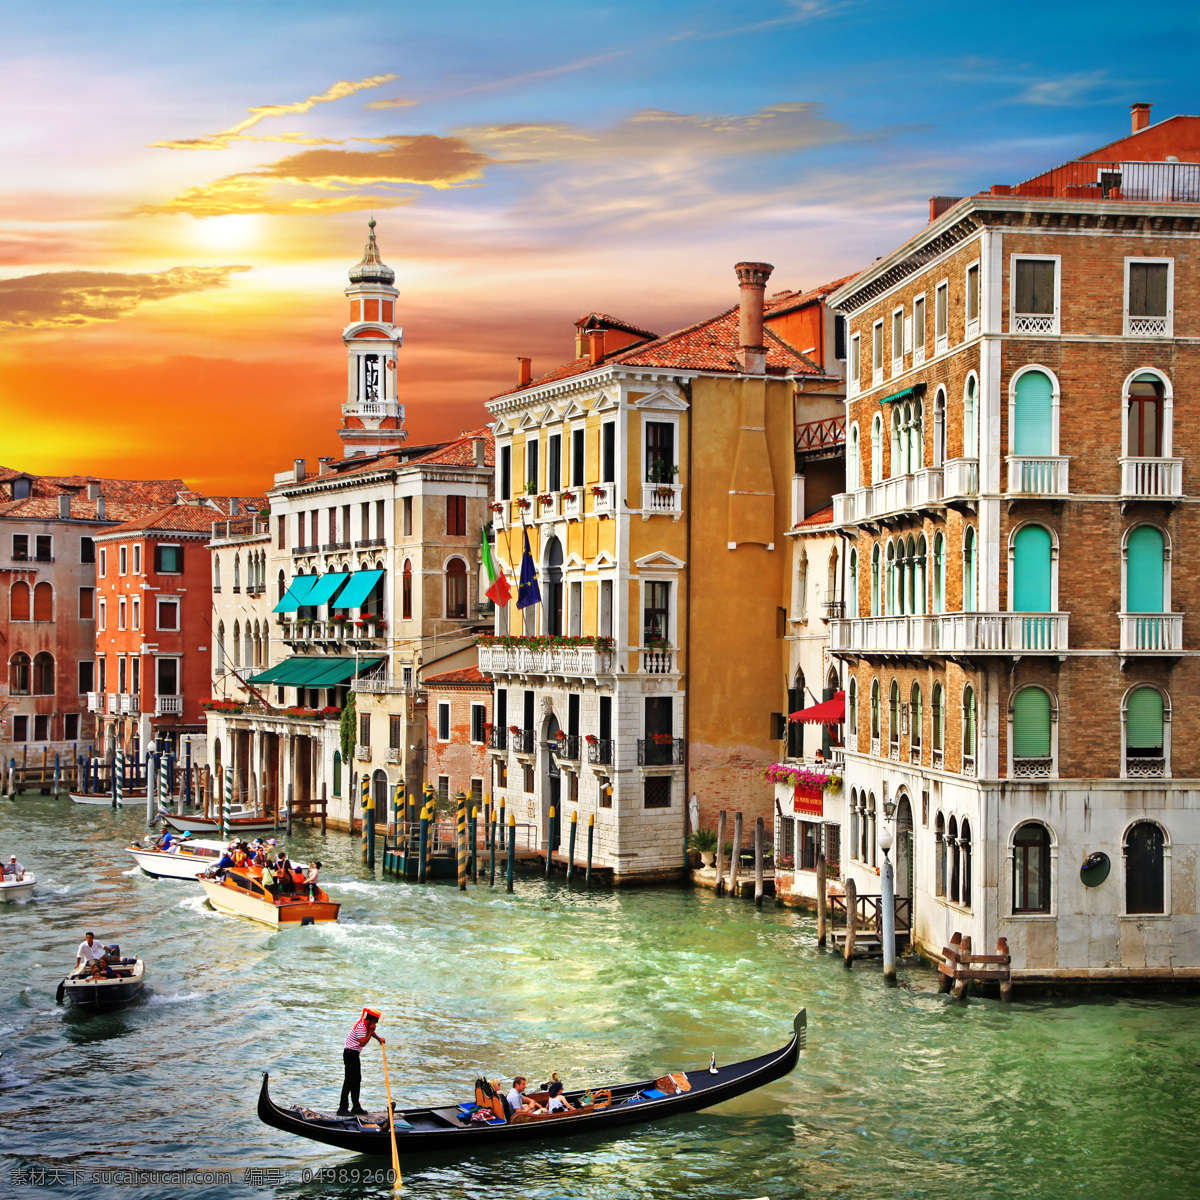 美丽 水城 威尼斯 威尼斯风景 美丽风景 水城威尼斯 游船 意大利风景 意大利 旅游景点 城市风景 其他风光 风景图片